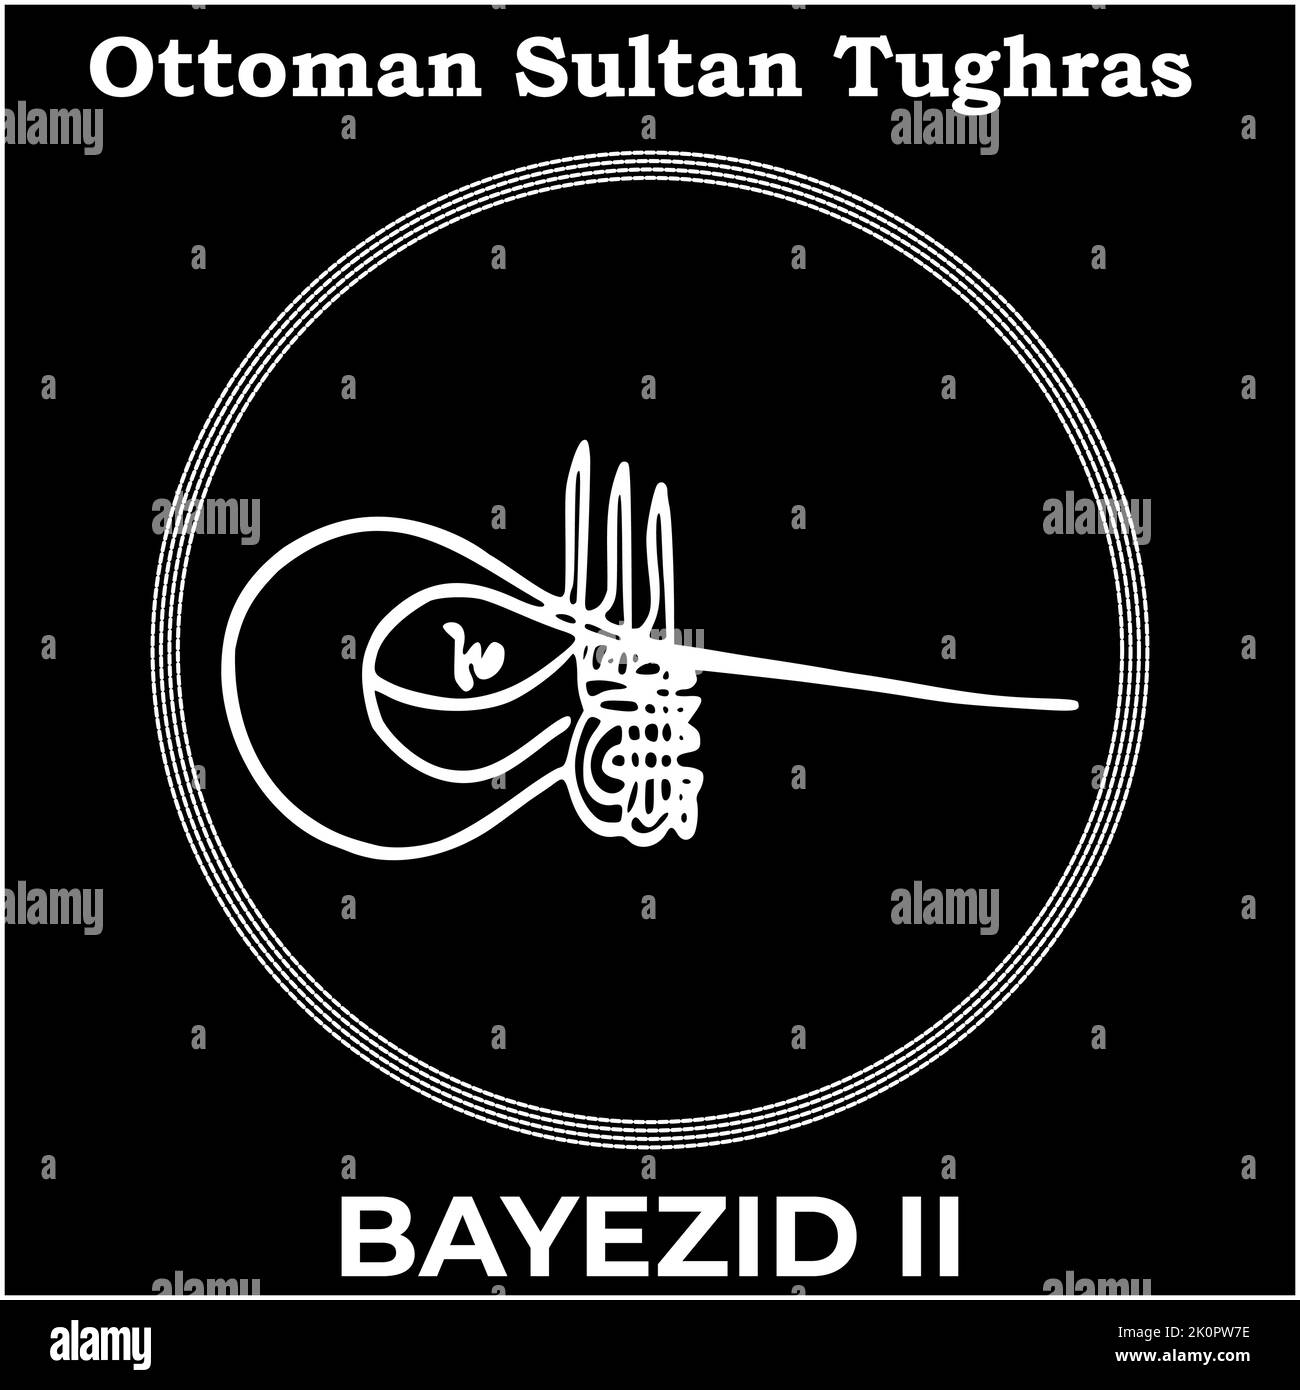 Vektorbild mit Tughra-Signatur des osmanischen Neunten Sultans Bayezid II, Tughra von Bayezid II mit schwarzem Hintergrund. Stock Vektor